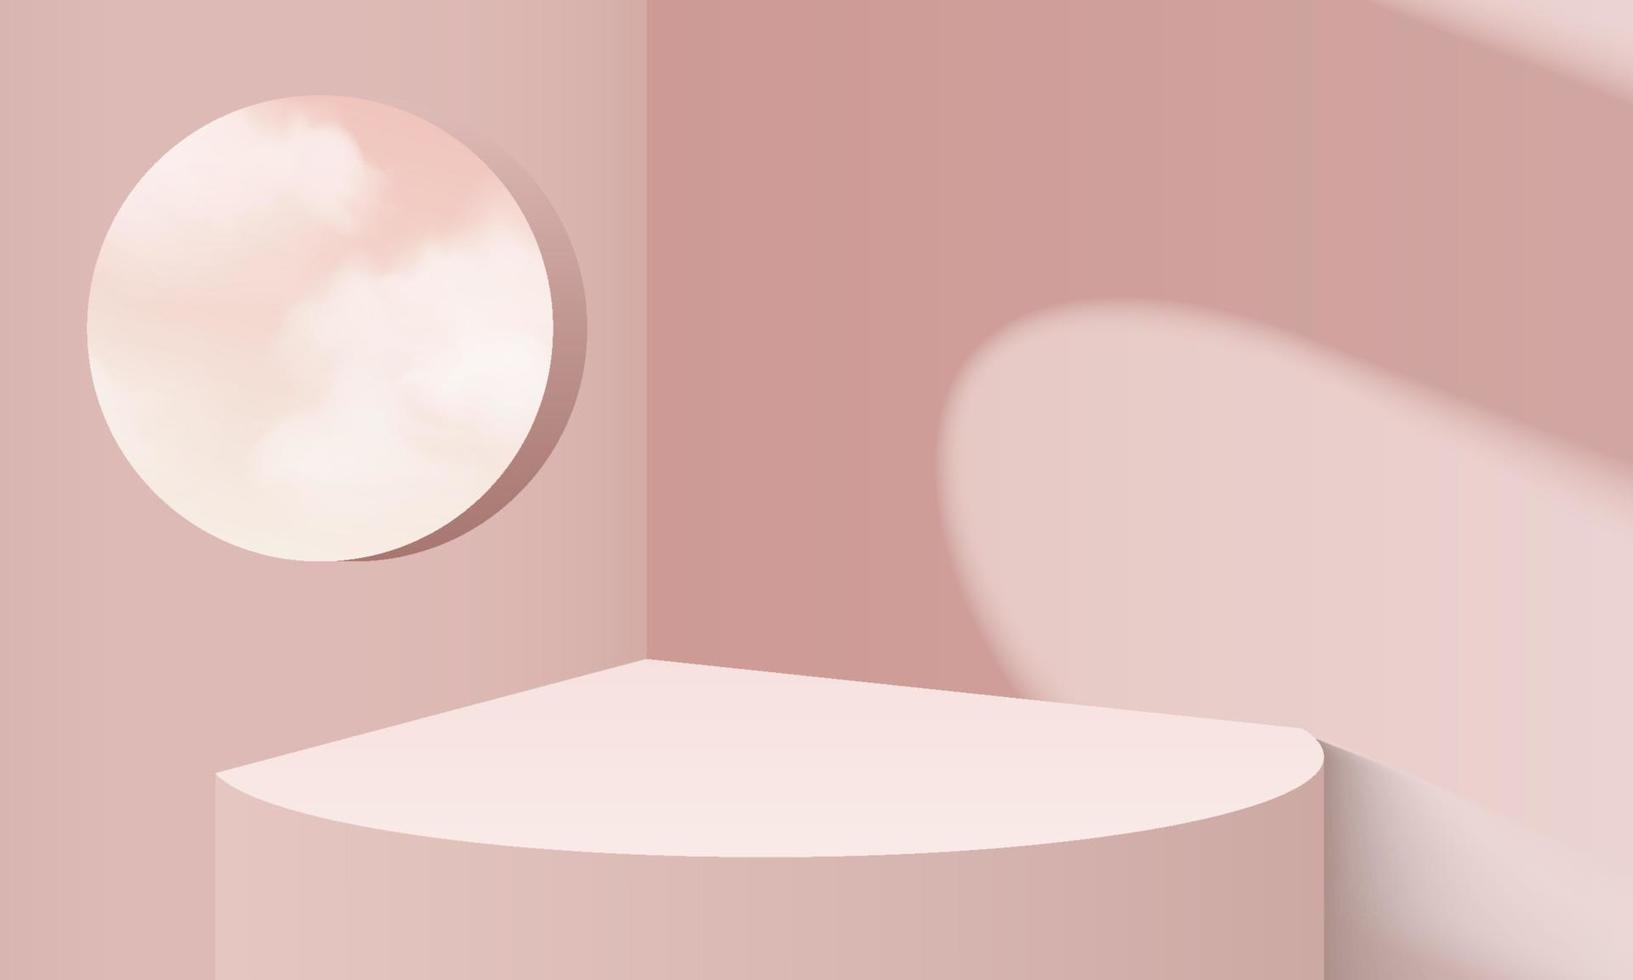 achtergrond vector weergeven 3D-kleurweergave met podium en cloud witte scène, cloud 3D minimale achtergrond 3D-rendering kleur pastel podium. podium op wolk render achtergrond